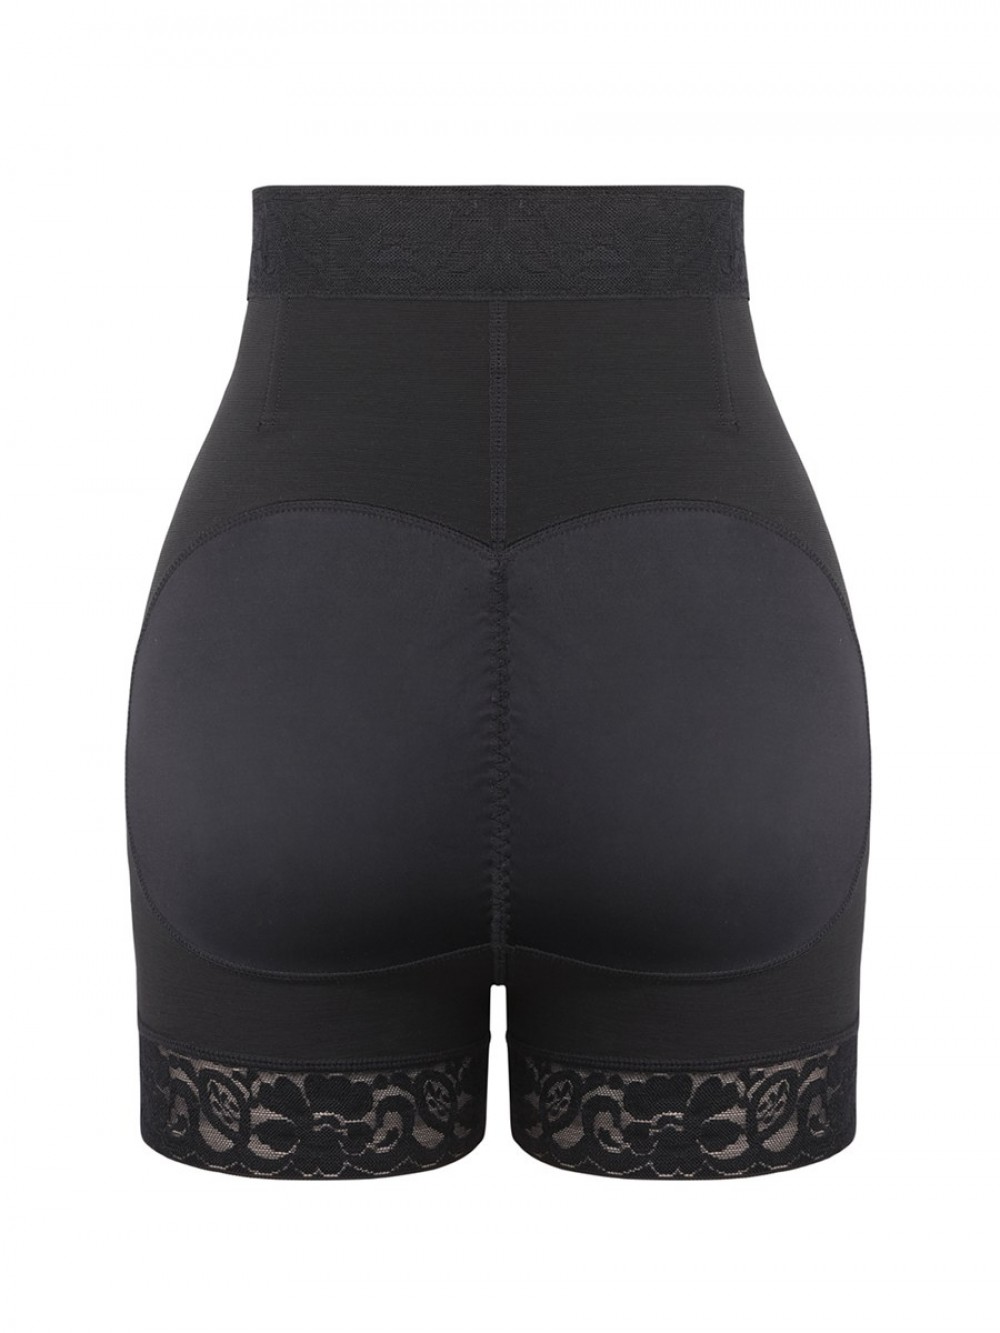 Black Front Zipper Butt Lifter Shorts High Waist Hourglass Figure